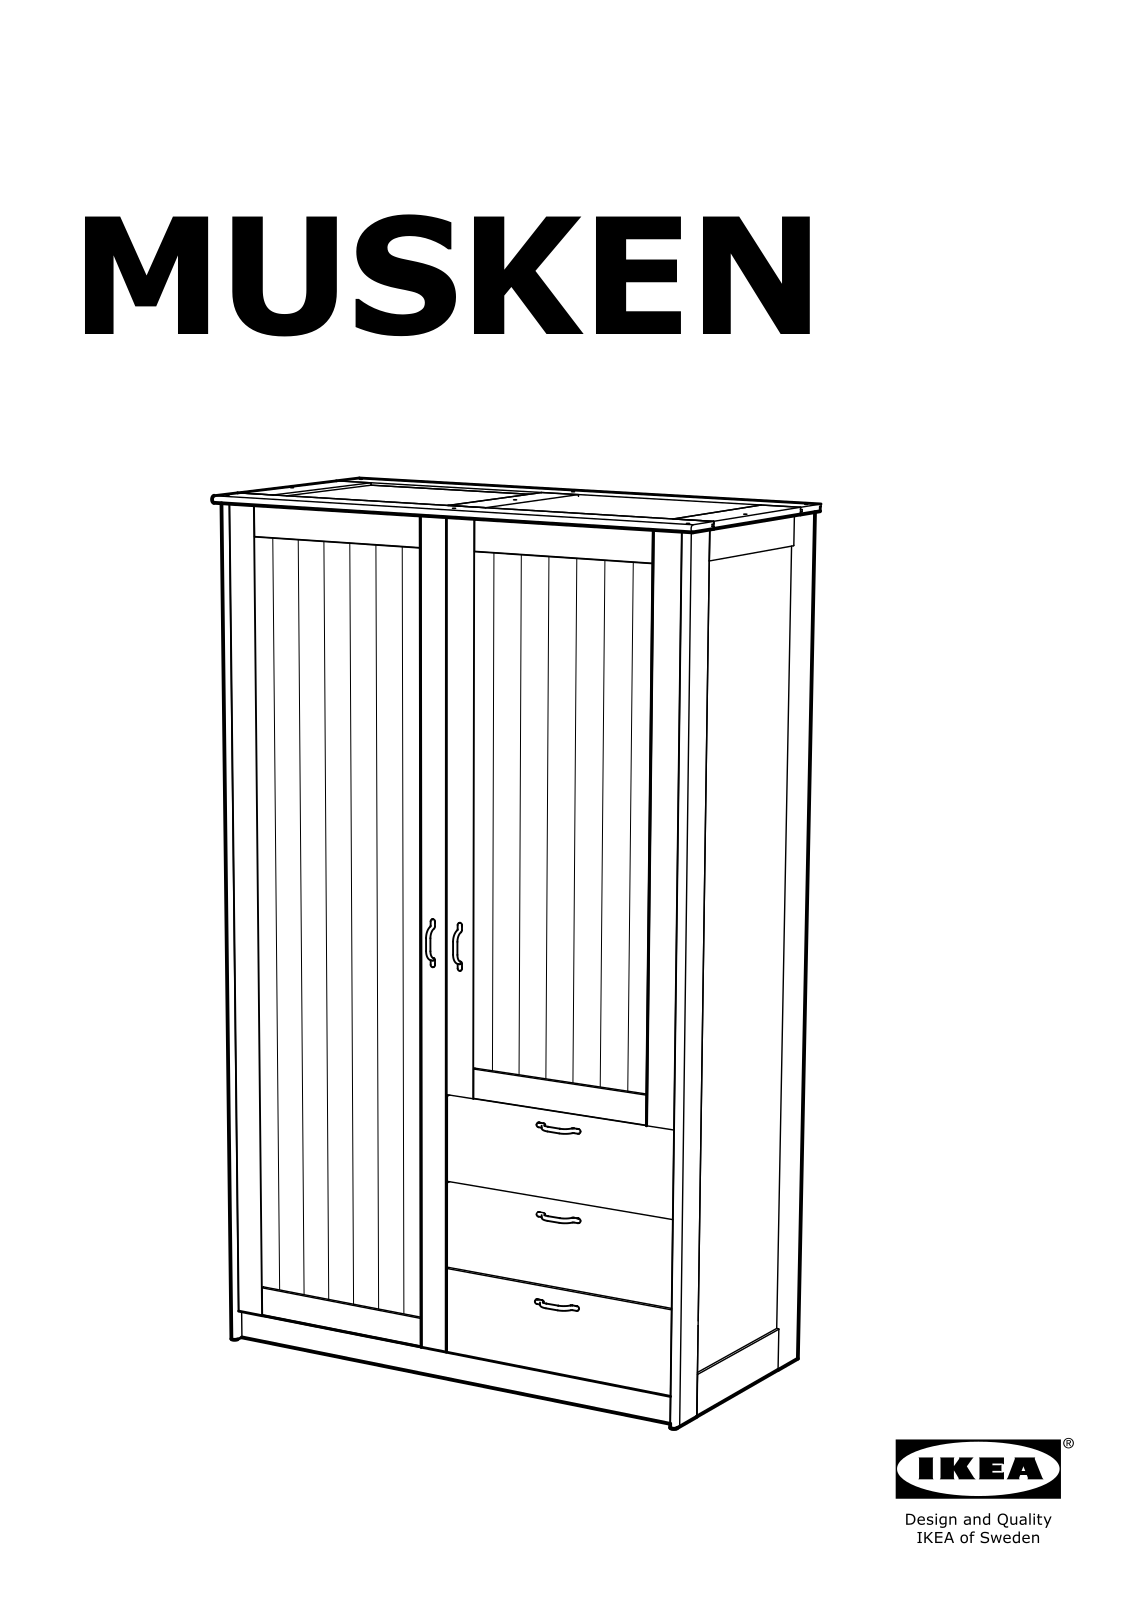 IKEA MUSKEN User Manual